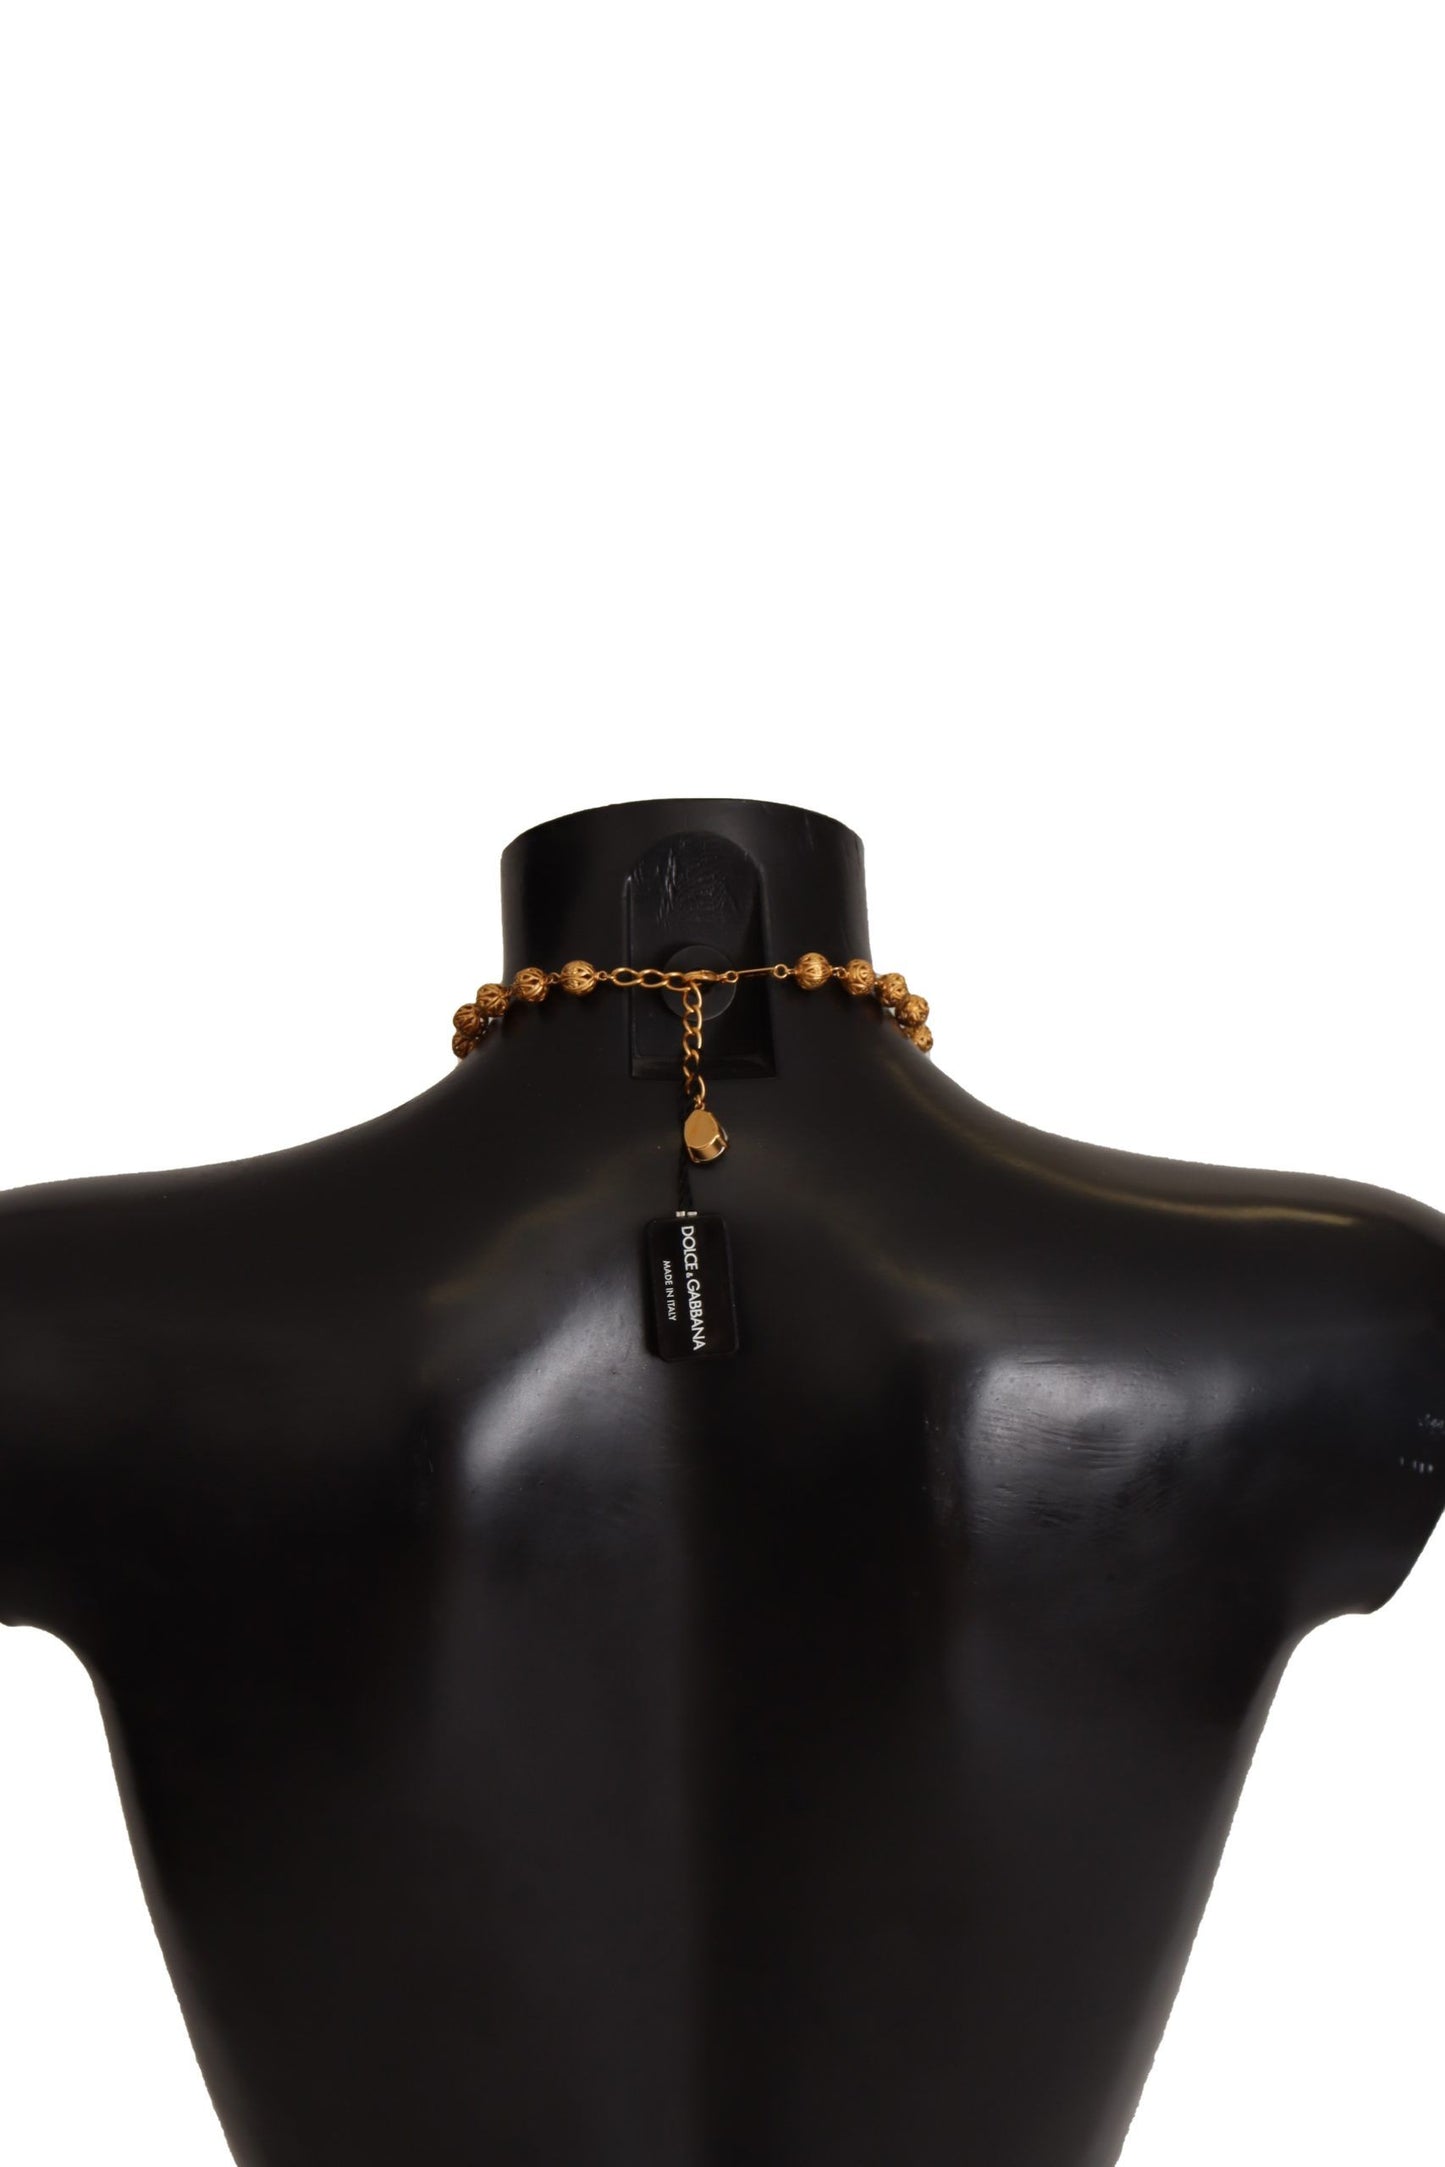 Dolce & Gabbana Gold Messing Carretto Sizilienaussage Kristallketten Halskette